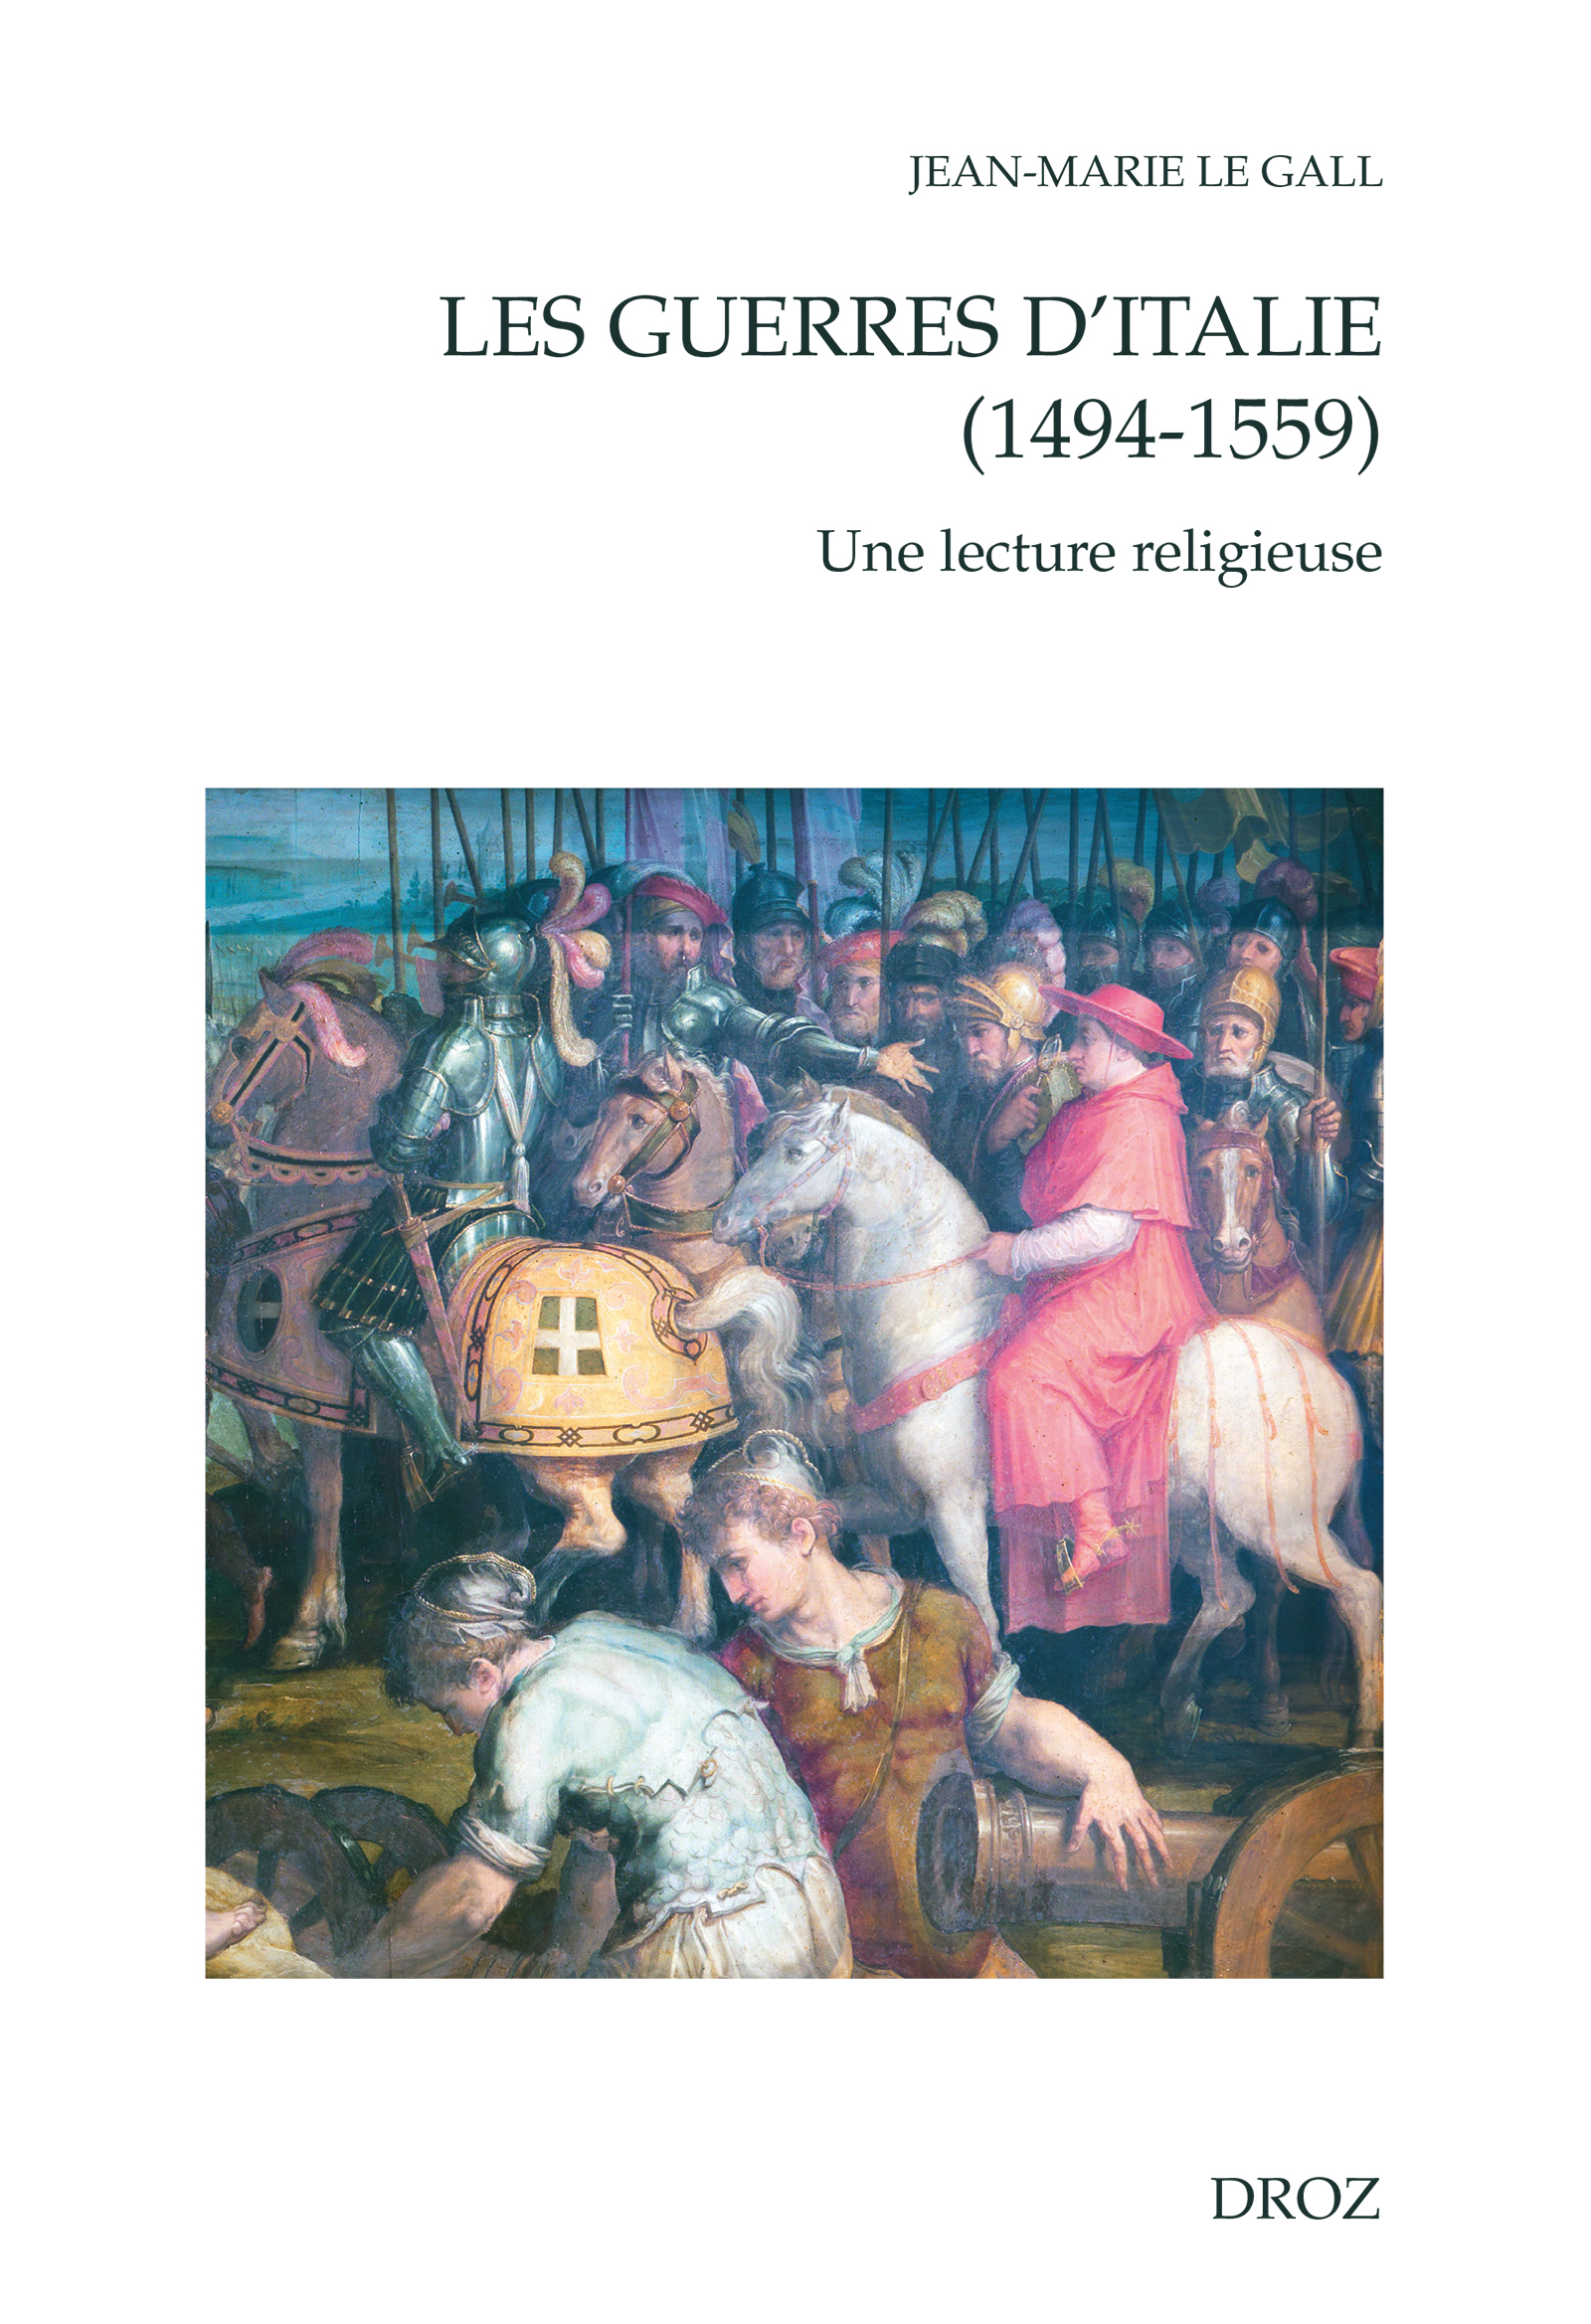 Les guerres d'Italie (1494-1559) De Jean-Marie le Gall - Librairie Droz